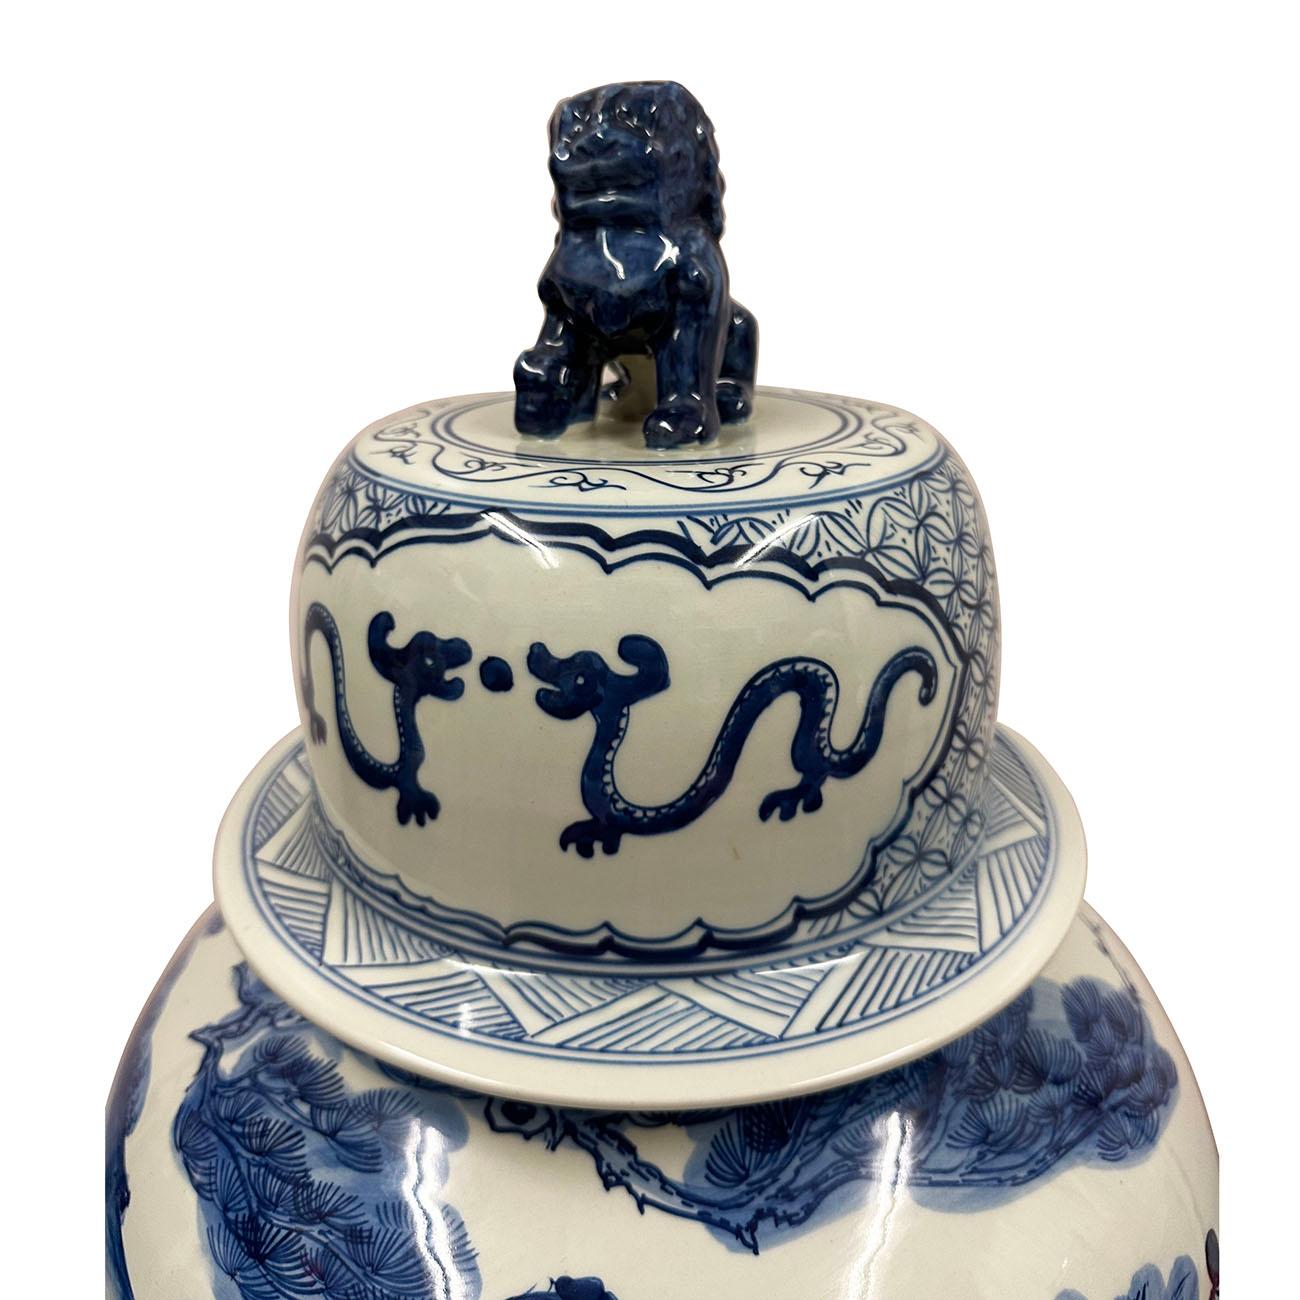 Dieses prächtige chinesische antike blau-weiße Porzellan-Ingwer-Glas wurde in Handarbeit aus berühmtem chinesischen blau-weißen Porzellan hergestellt und handbemalt. Es handelt sich um ein Gemälde von Youqiu aus der Ming-Dynastie, das heute im